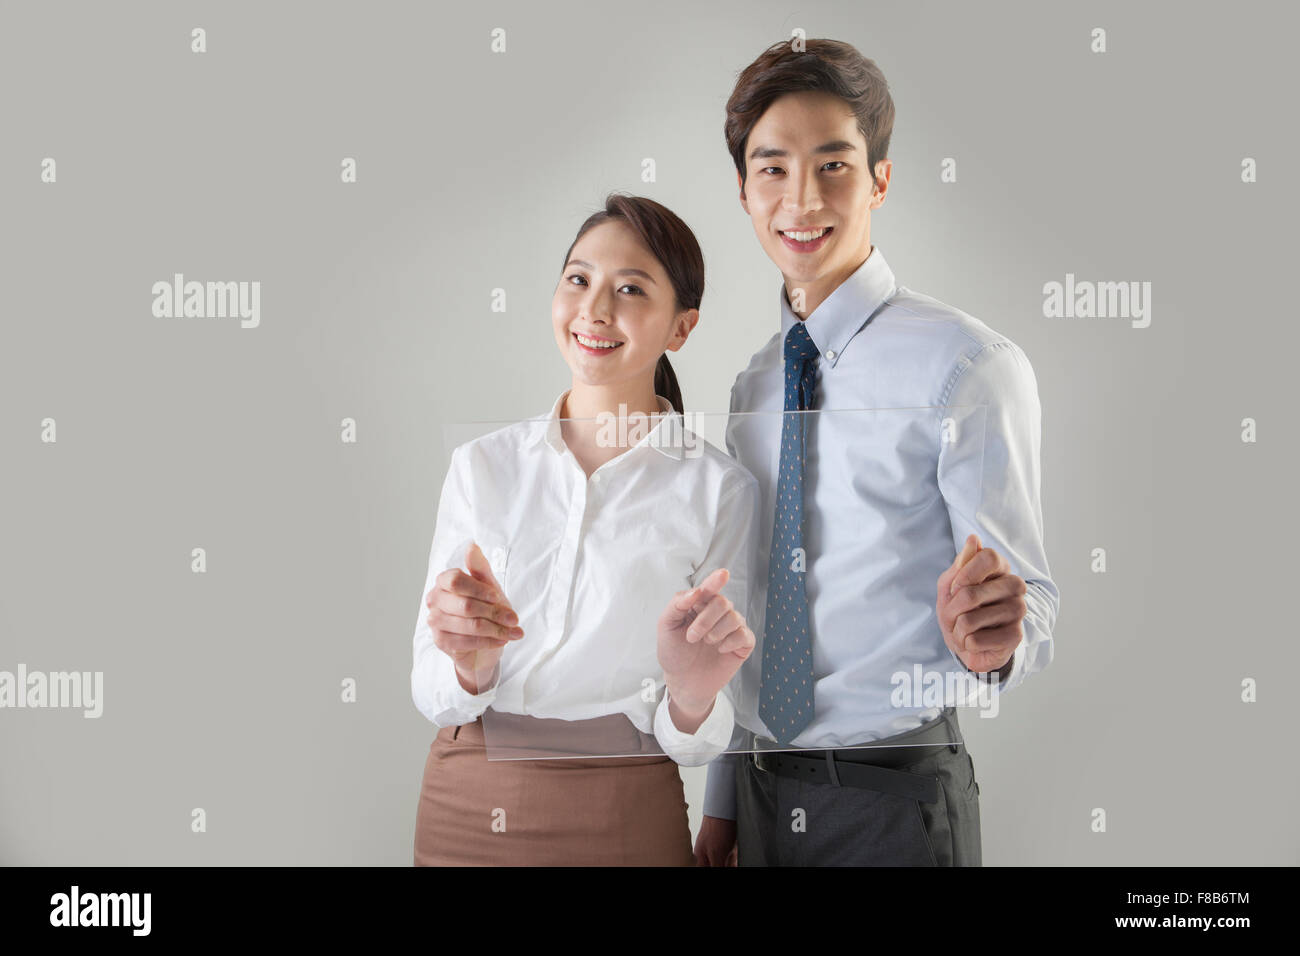 L'homme et la femme dans des tenues officielles holding les écrans tactiles et regardant vers l'avant avec un sourire Banque D'Images